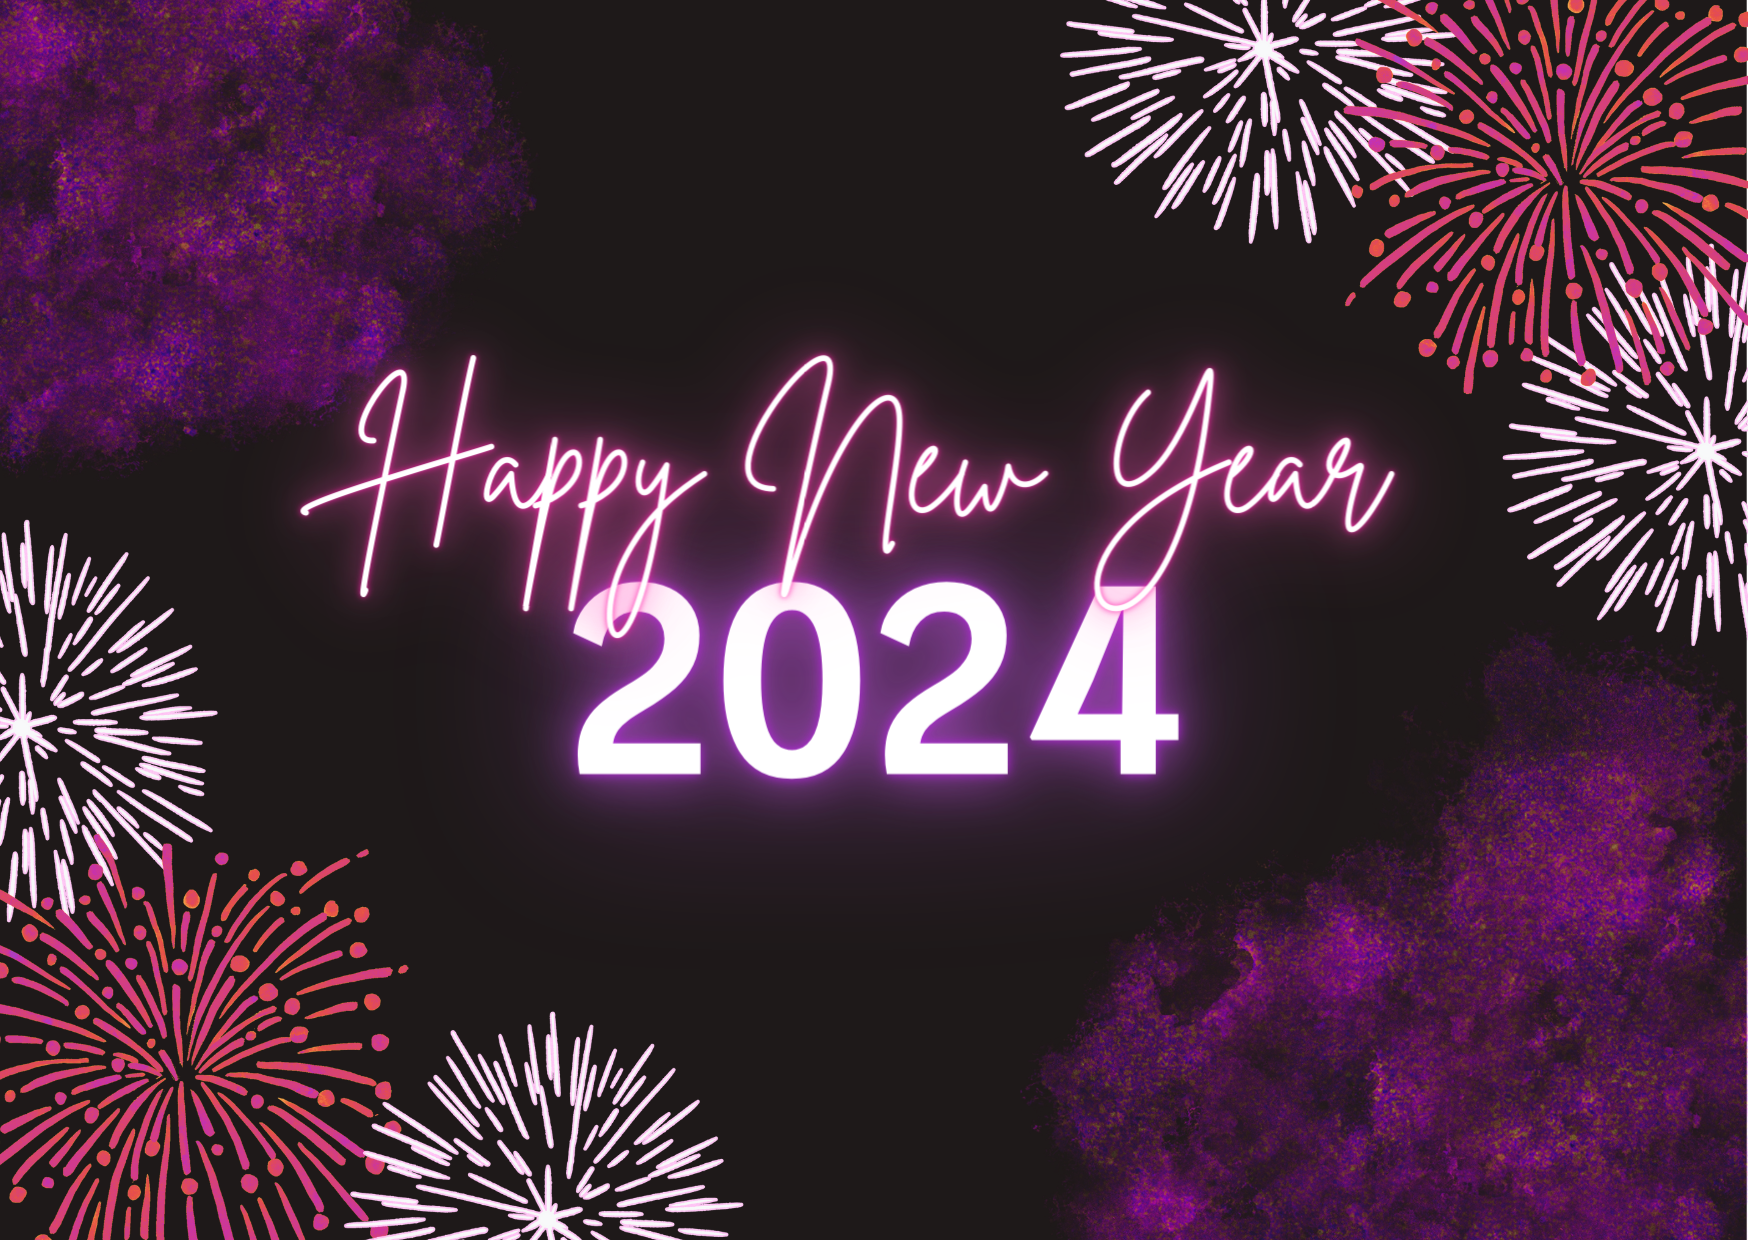 ¡El equipo de Pharmya le desea un feliz y próspero año 2024!